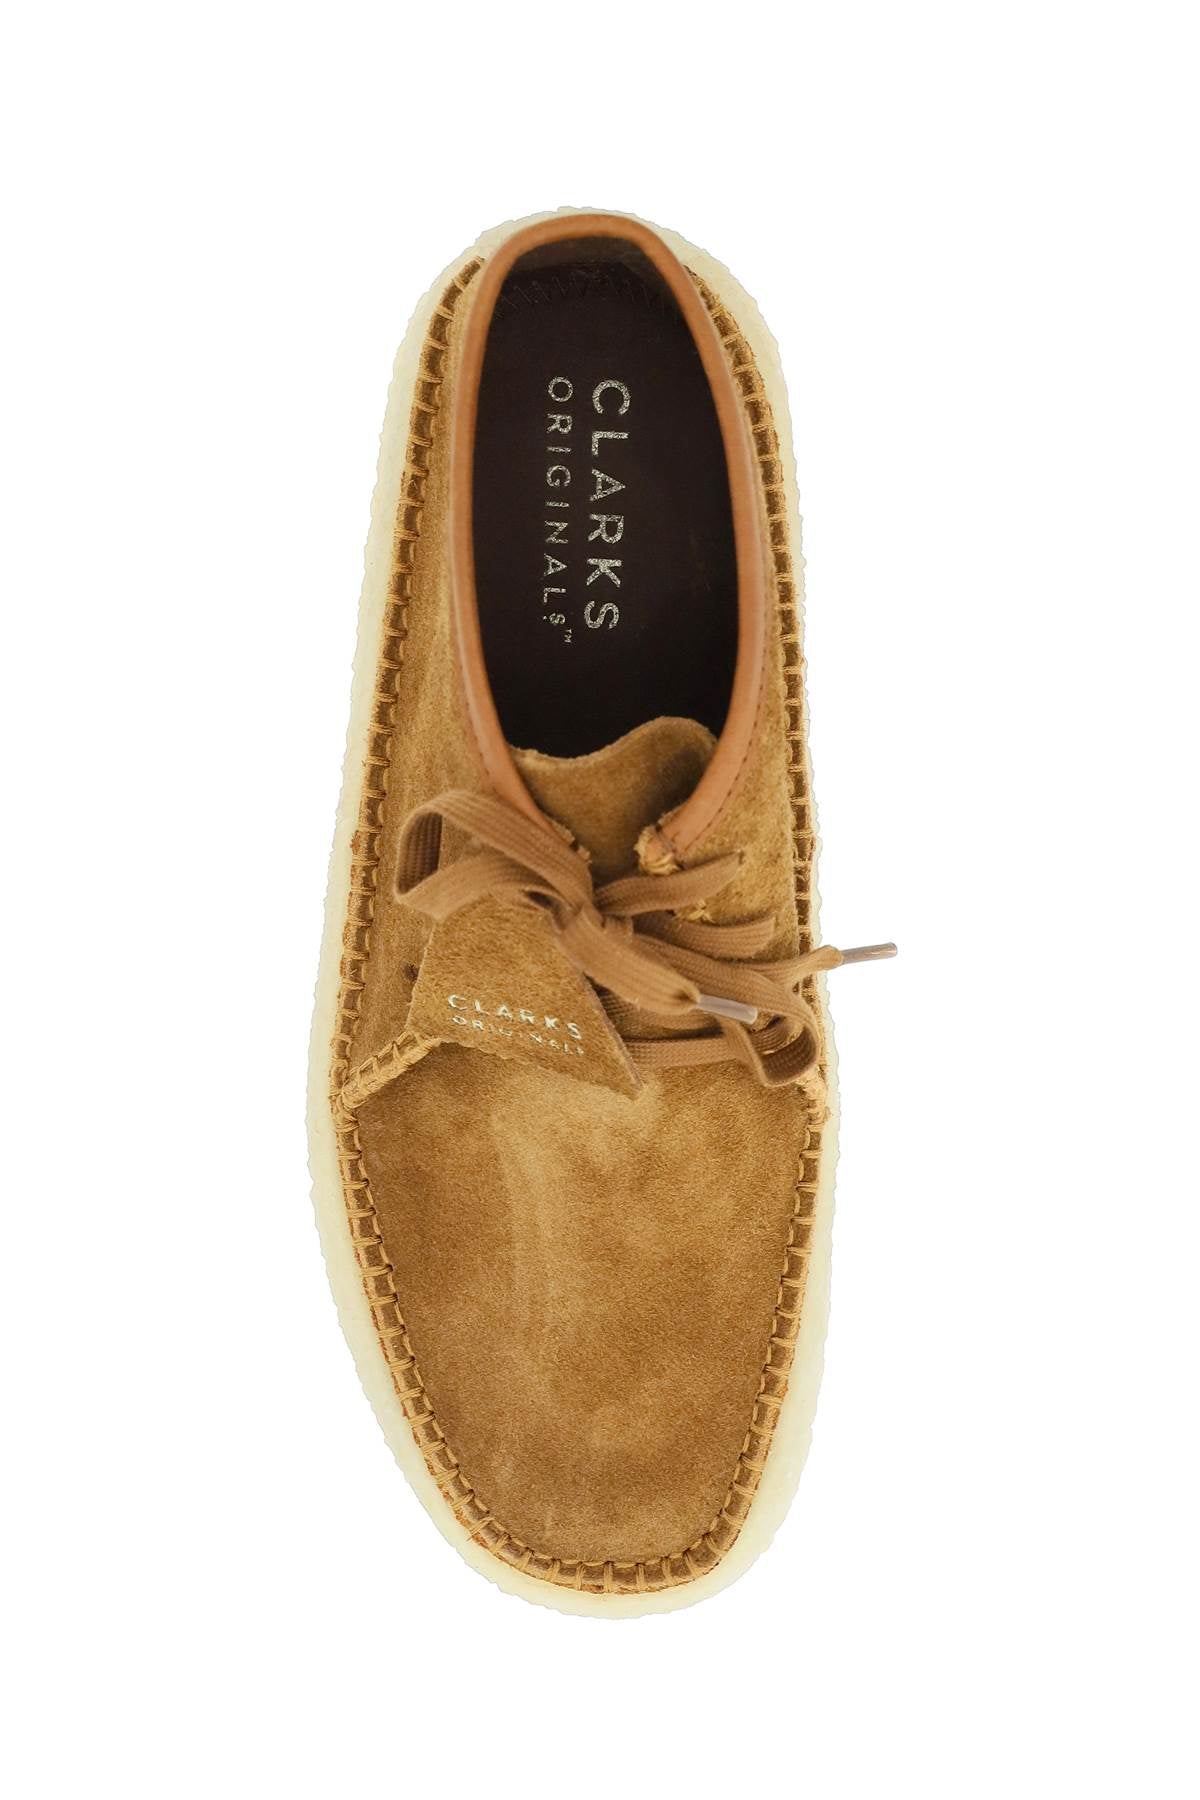 Clarks Clarks originals suede leather caravan lace-up shoes